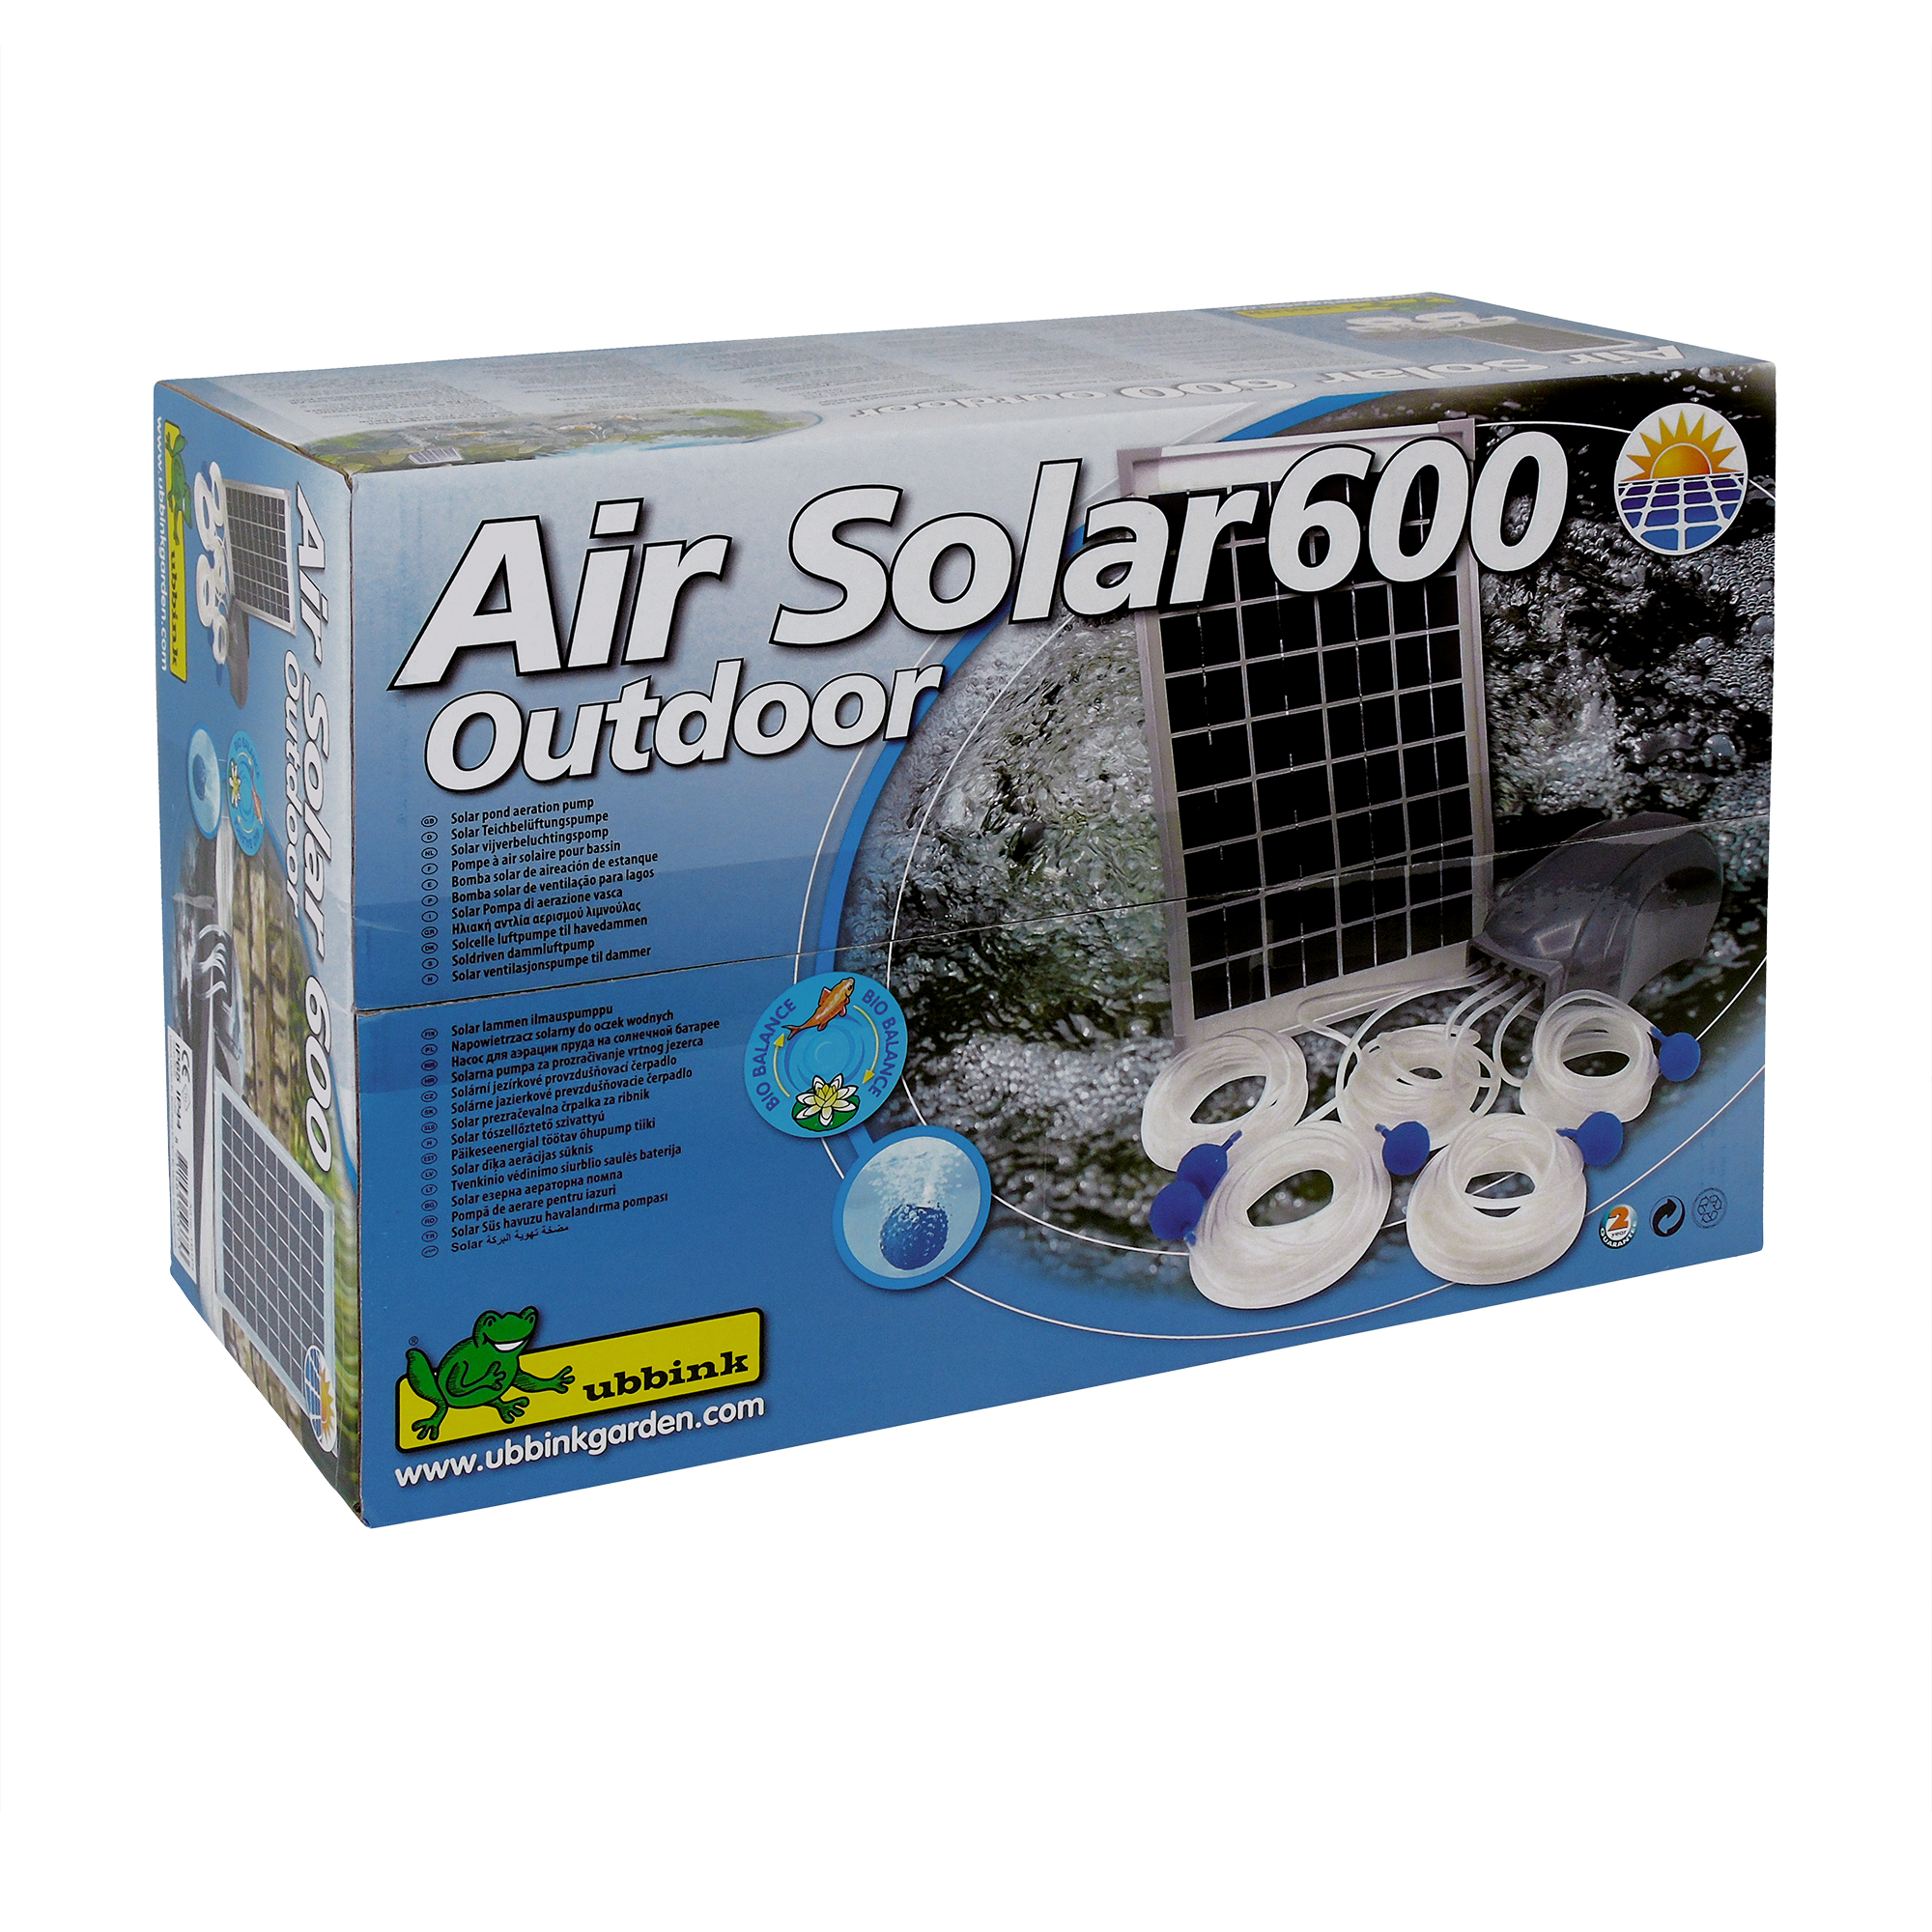 AIR SOLAR 600 outdoor pompe d'aération - Le Monde Du Bassin